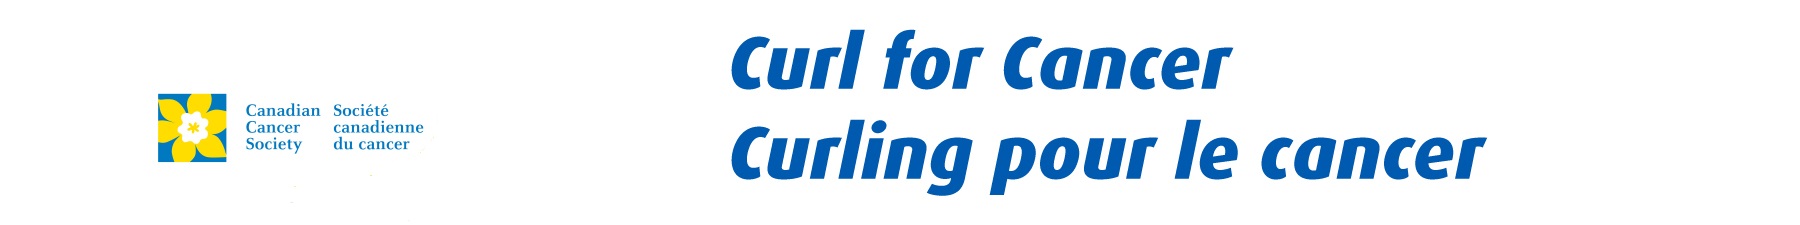 Curling_NB_Alt_Header_V2